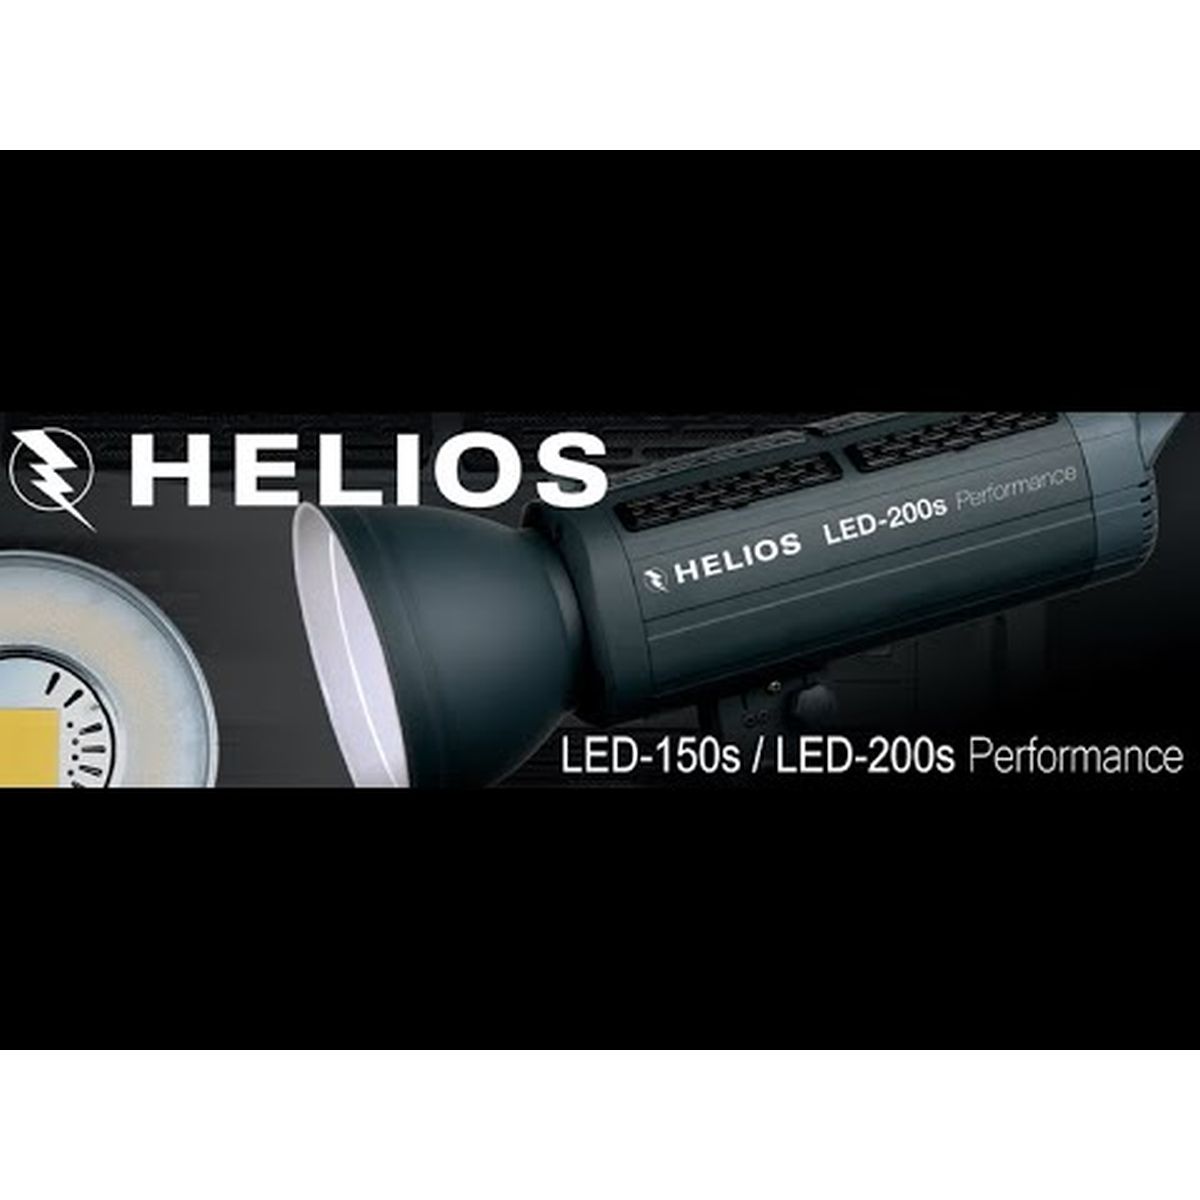 Helios LED-150s Performance Studioleuchte